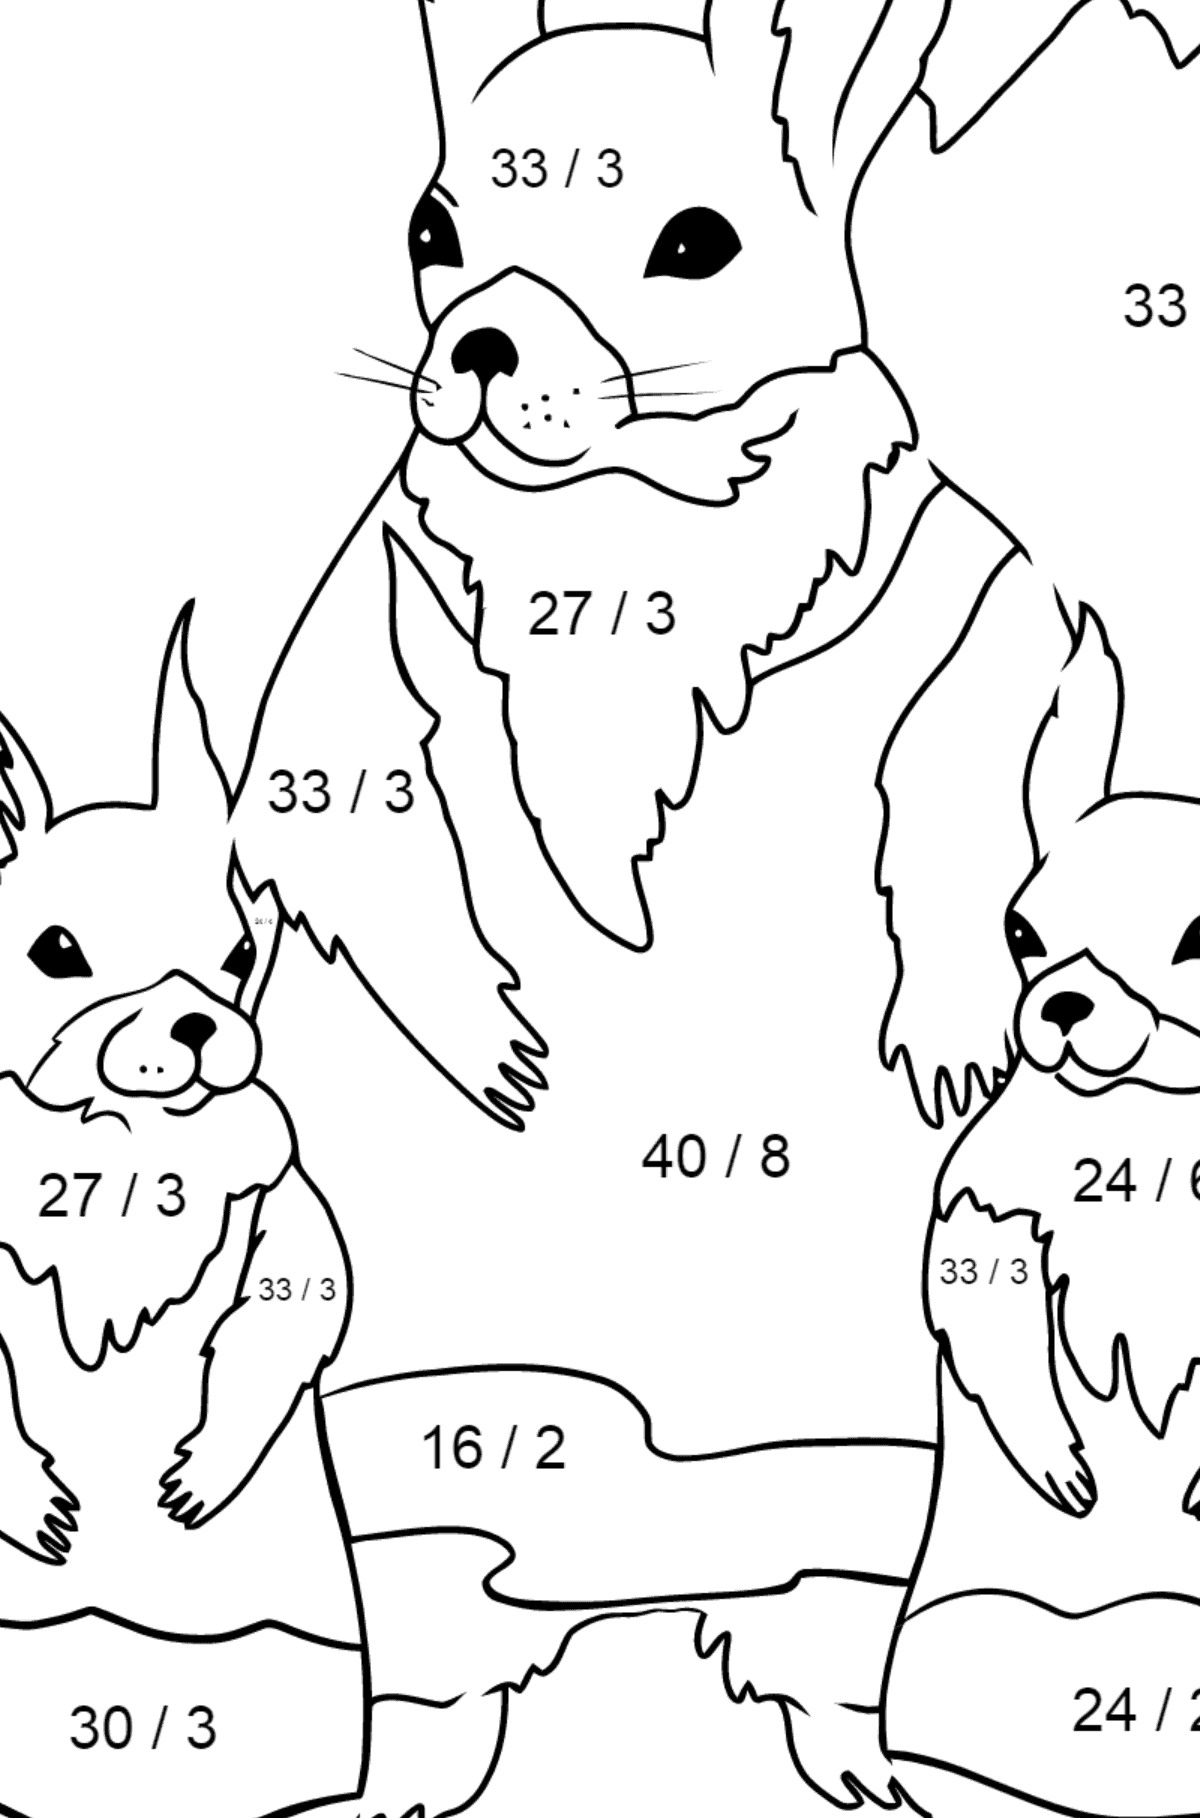 Malvorlagen - Eichhörnchen im Frühling - Mathe Ausmalbilder - Division für Kinder